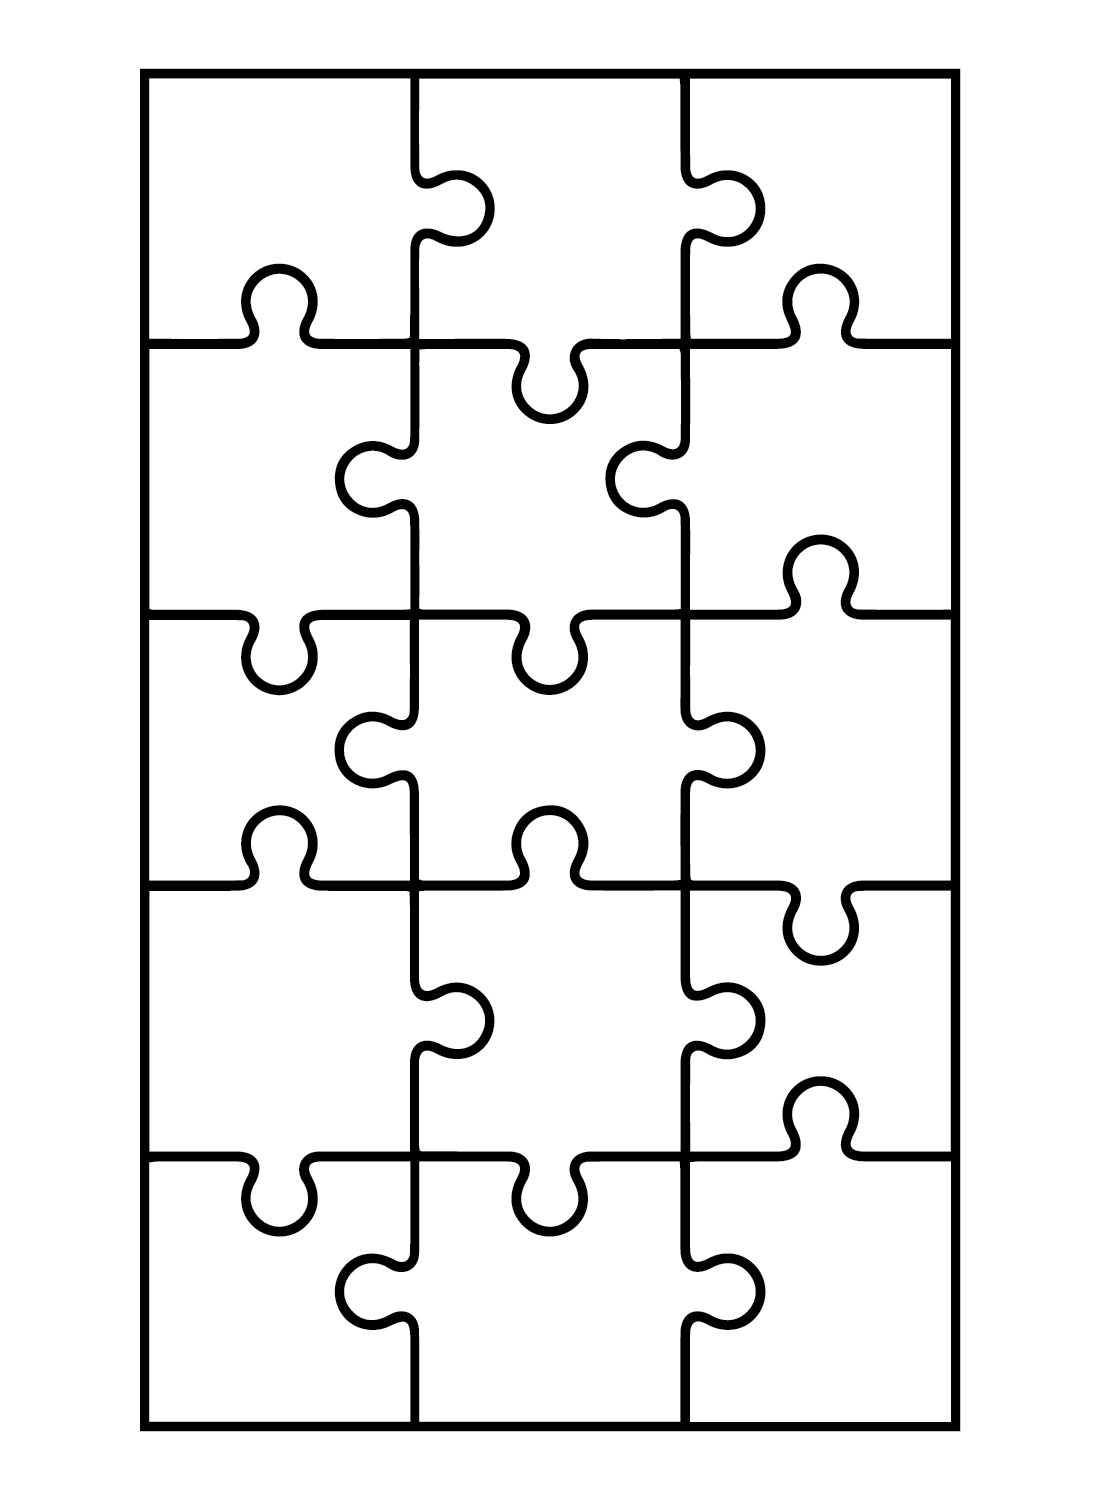 Ежедневная головоломка от Jigsaw Puzzle